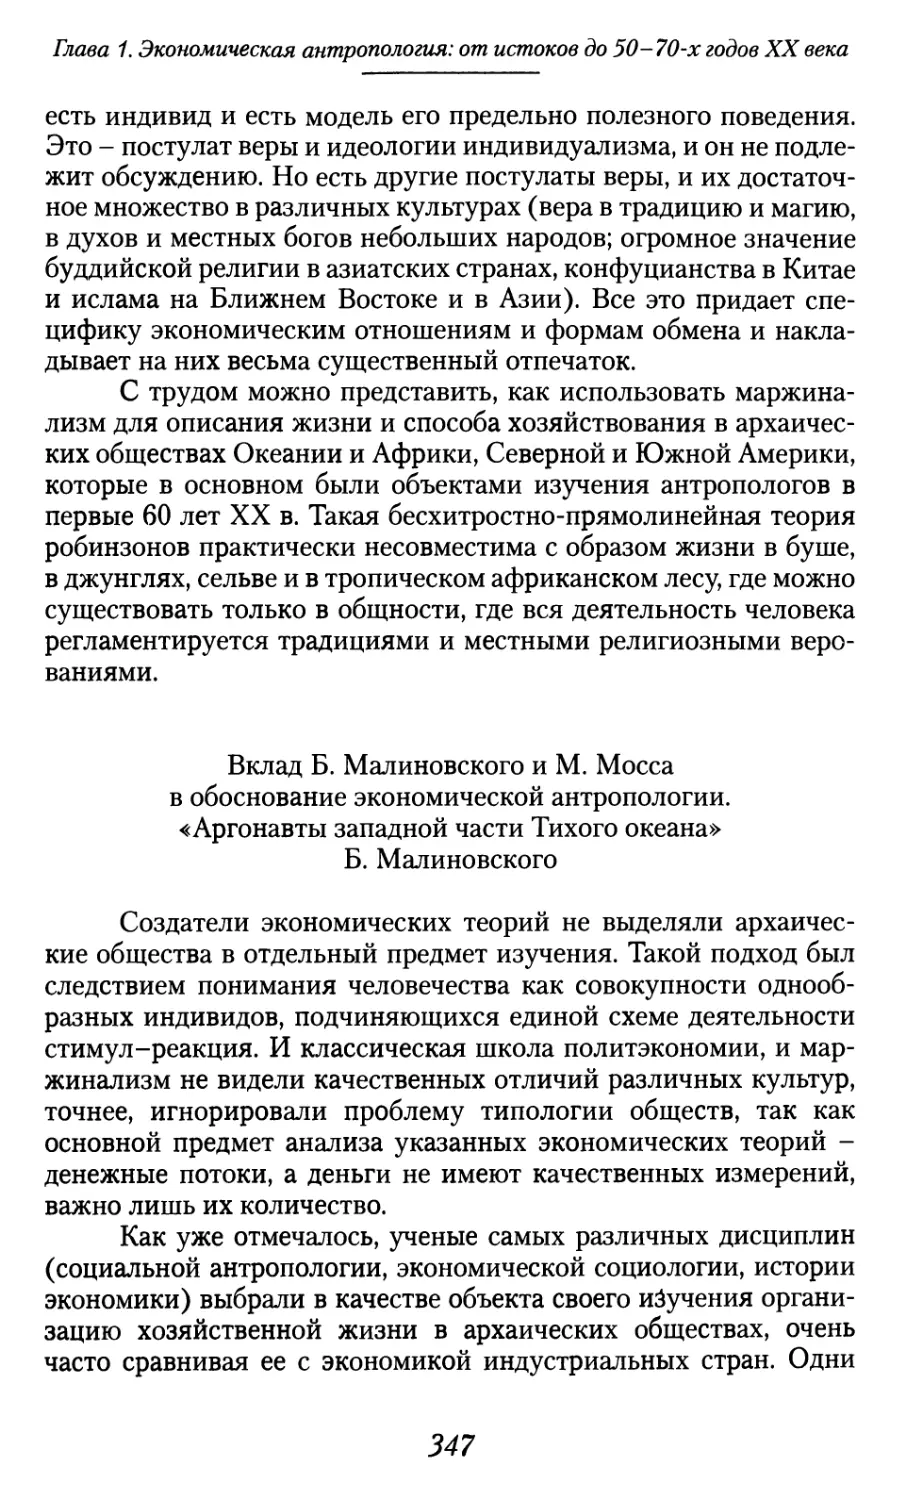 Вклад Б. Малиновского и М. Мосса в обоснование экономической антропологии. «Аргонавты западной части Тихого океана» Б. Малиновского